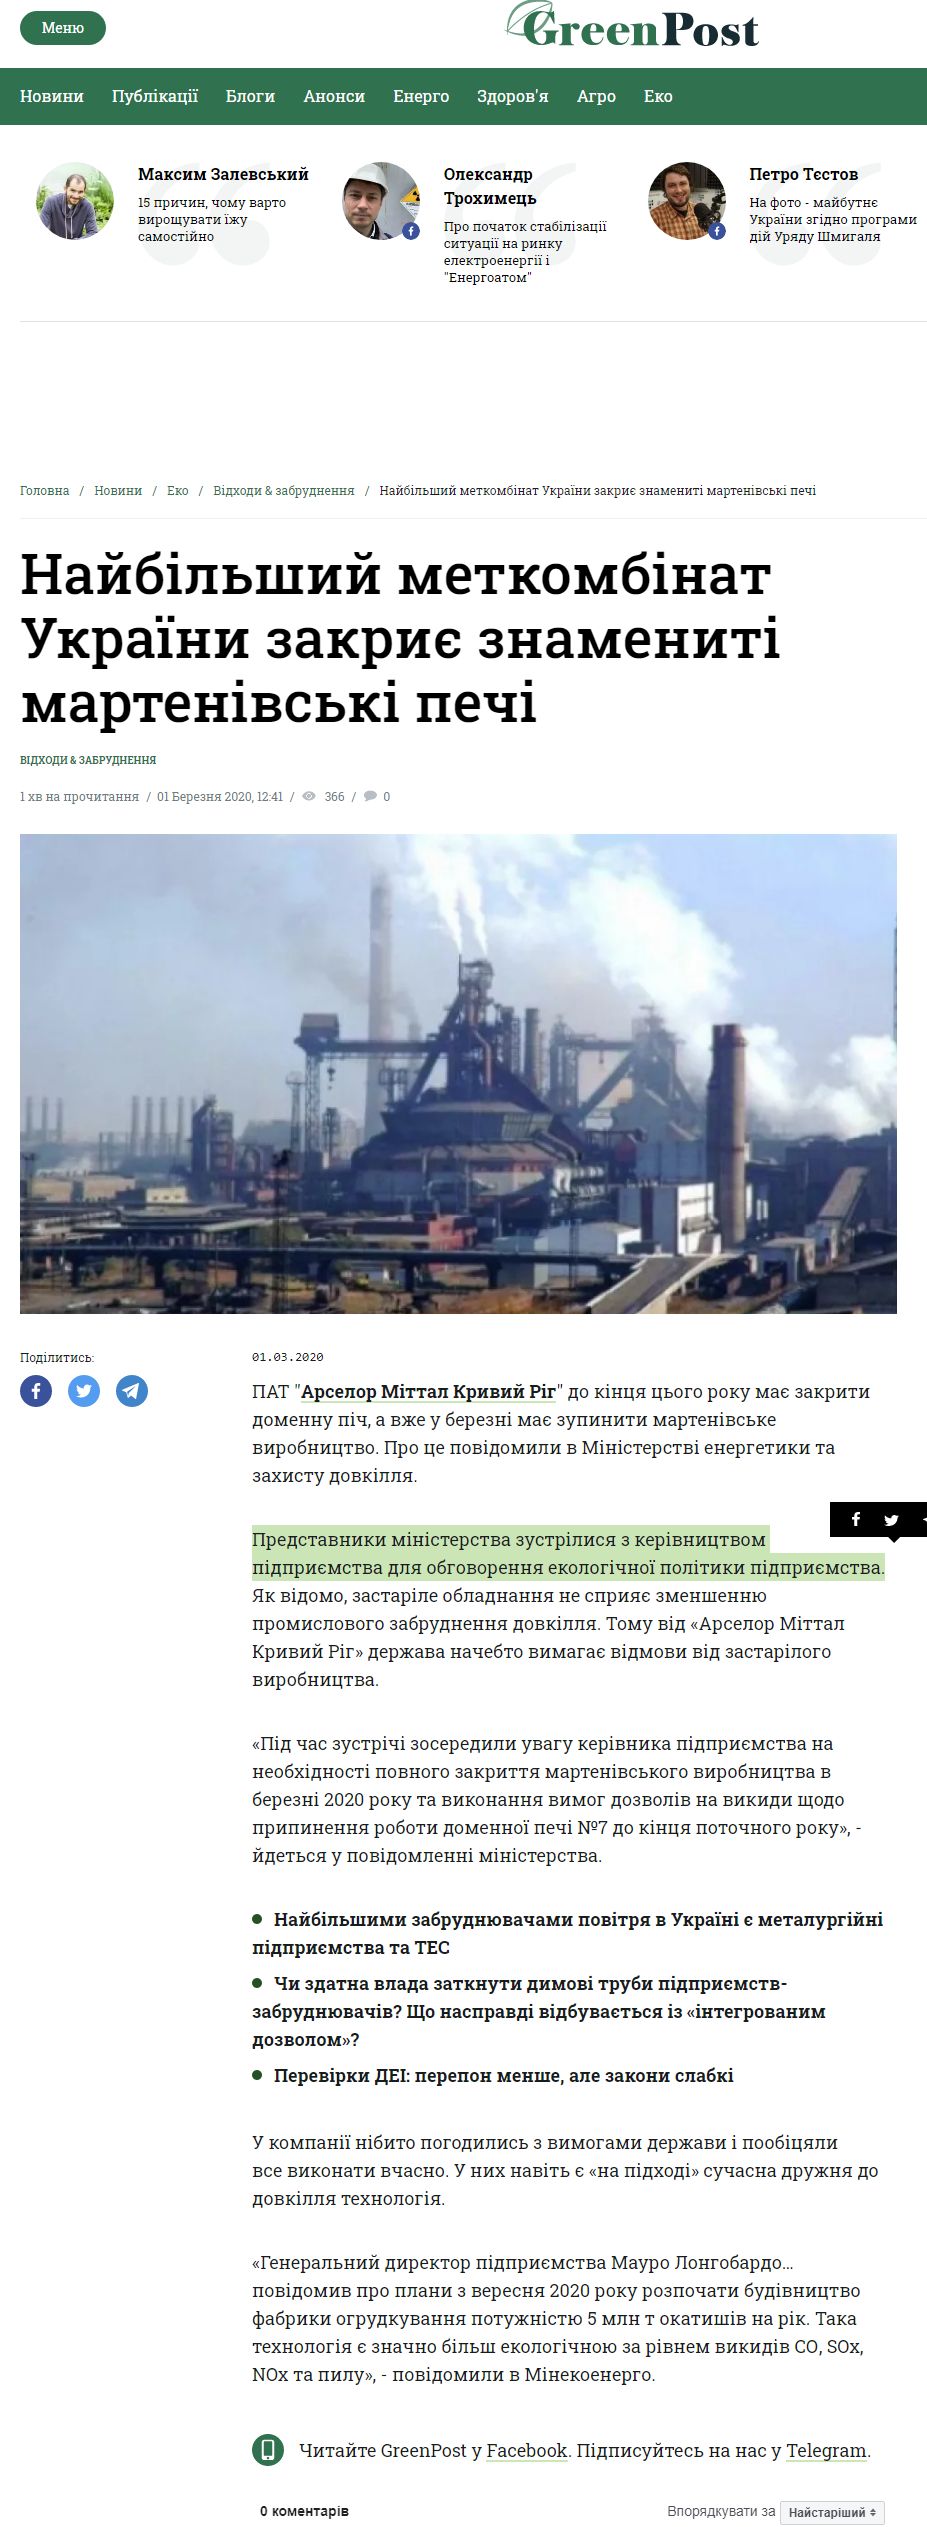 https://greenpost.press/news/najbilshyj-metkombinat-ukrayiny-zakryye-znamenyti-martenivski-pechi-i2206